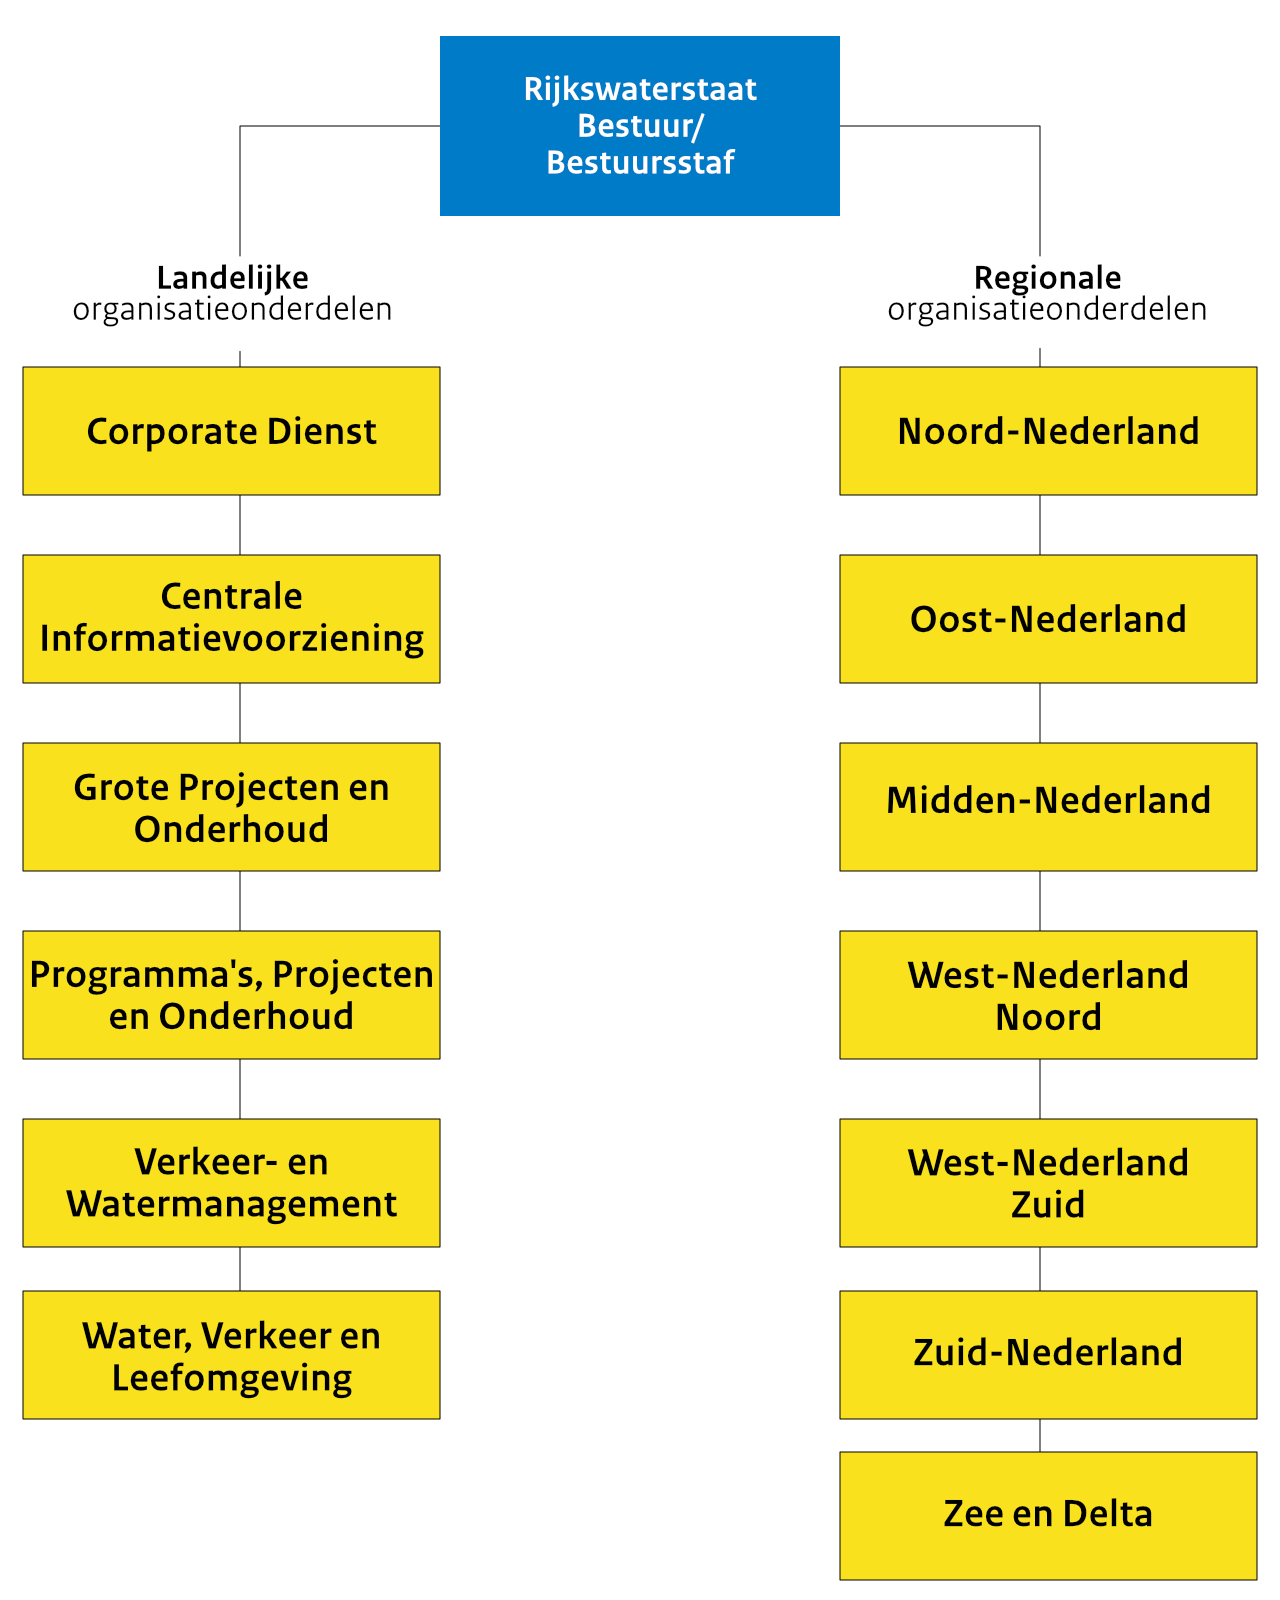 De organisatiestructuur van Rijkswaterstaat begint bij het bestuur/de Bestuursstaf. In de linkerkolom staan de landelijke organisatieonderdelen. In de rechterkolom staan de regionale organisatieonderdelen.